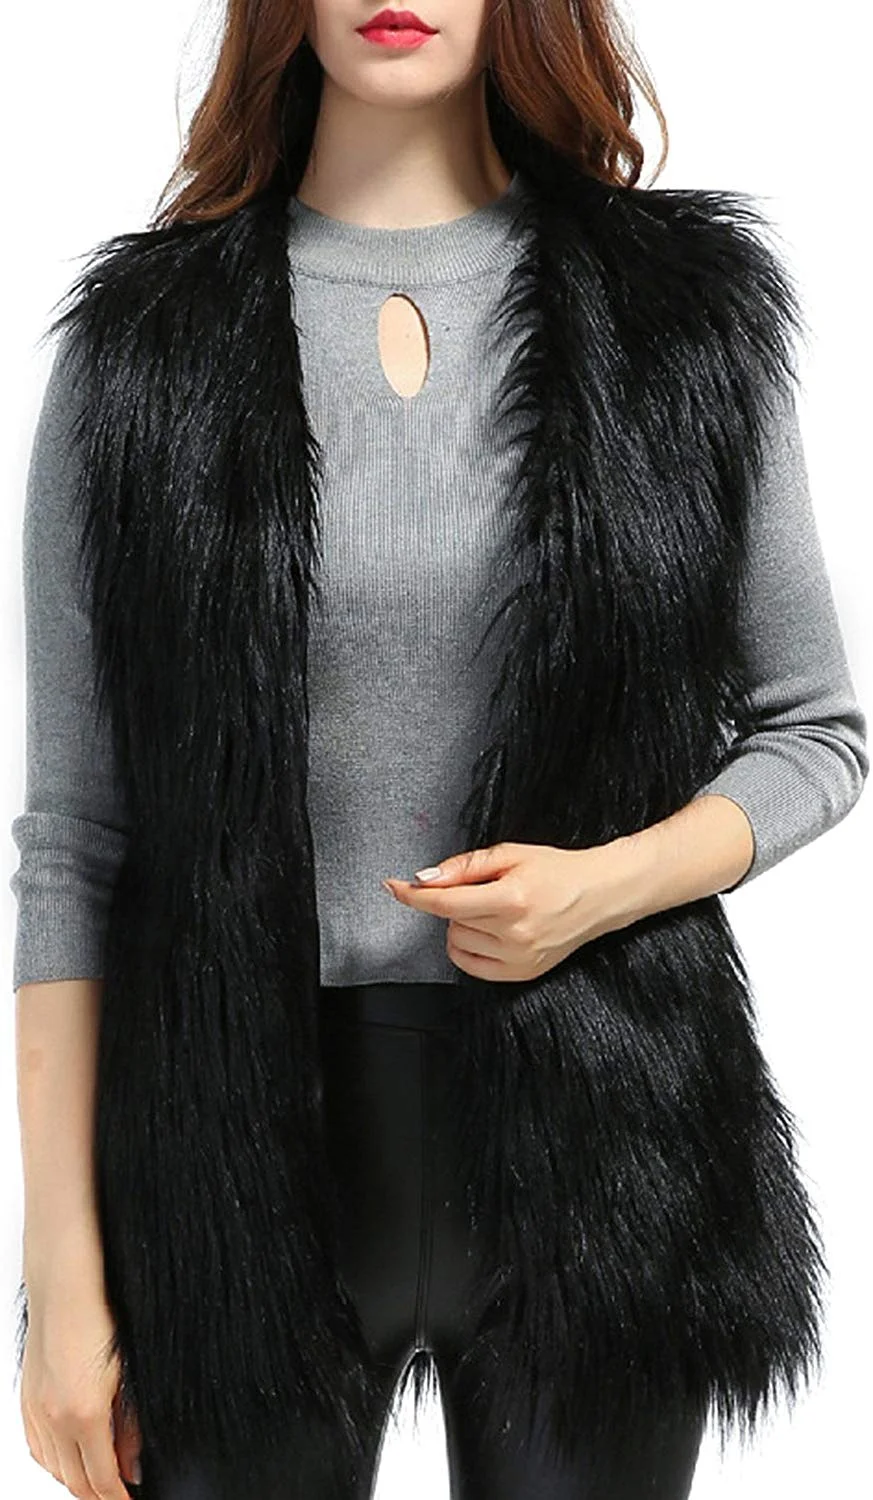 Women's Faux fur Waistcoat Vests Sleeveless Jacket Outerwear